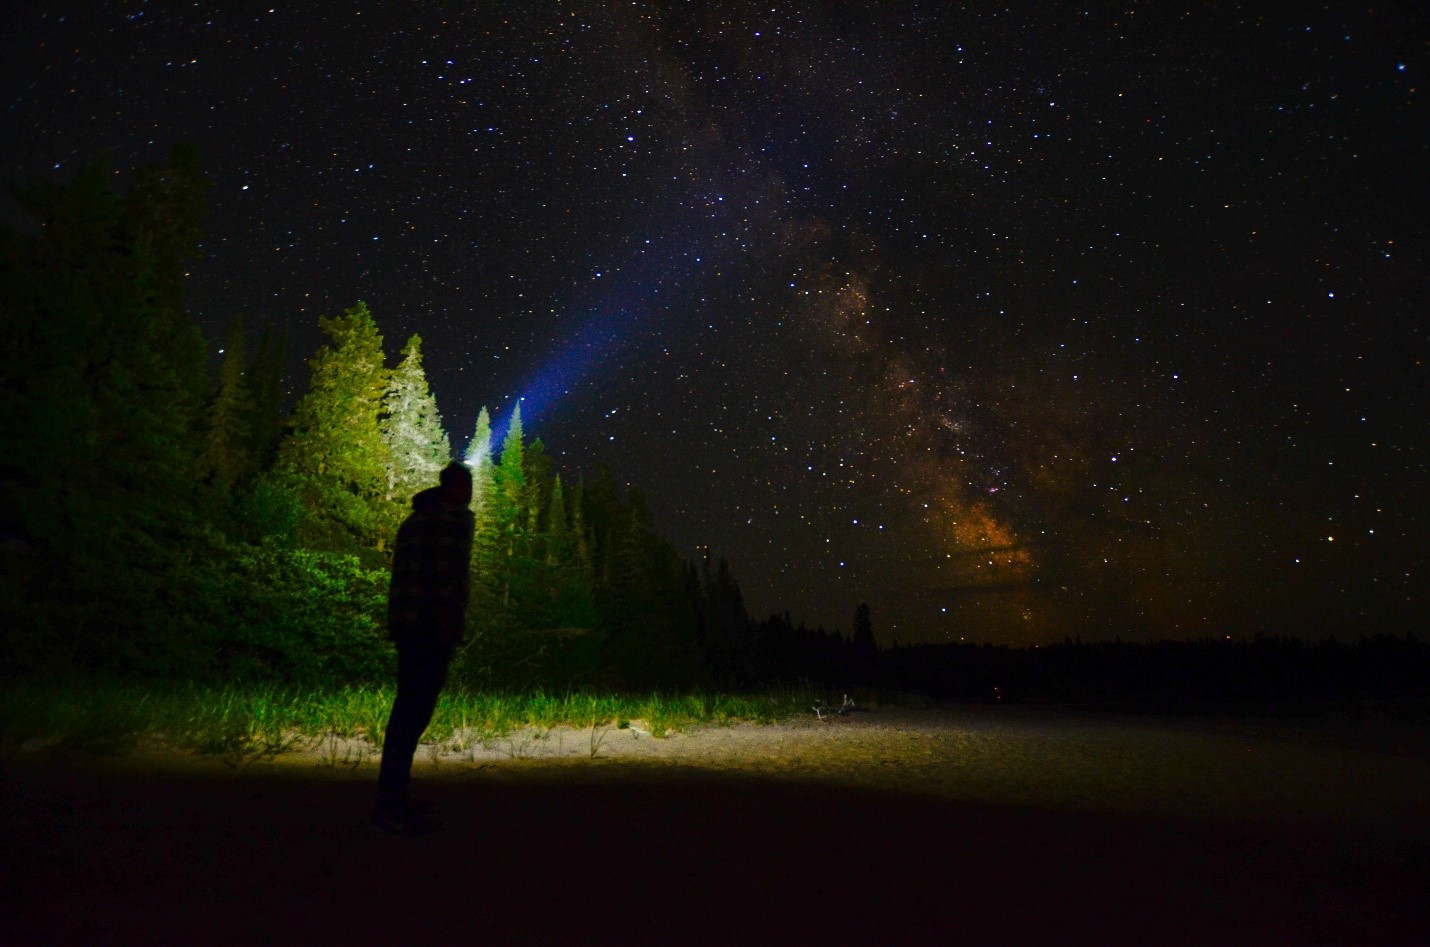 Une personne se tenant à l’orée d’une forêt la nuit, pointant sa lampe de poche vers un ciel étoilé.